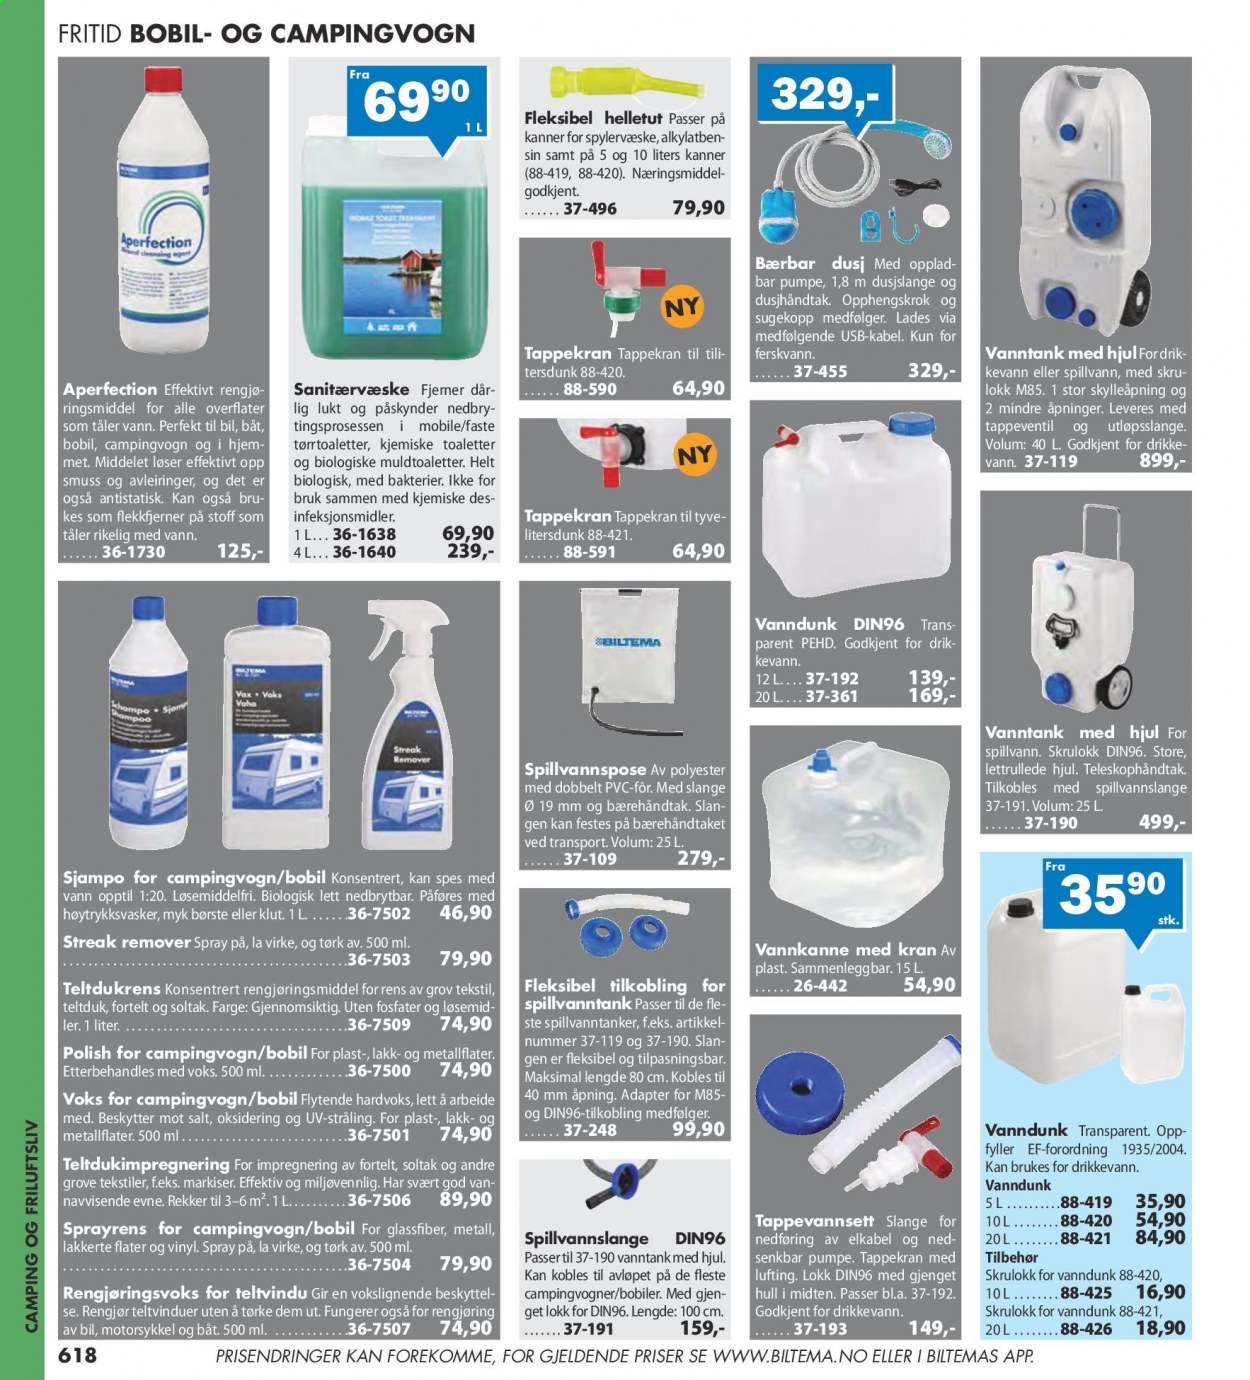 thumbnail - Kundeavis Biltema - Produkter fra tilbudsaviser - rengjøringsprodukter, polish, spylervæske. Side 618.